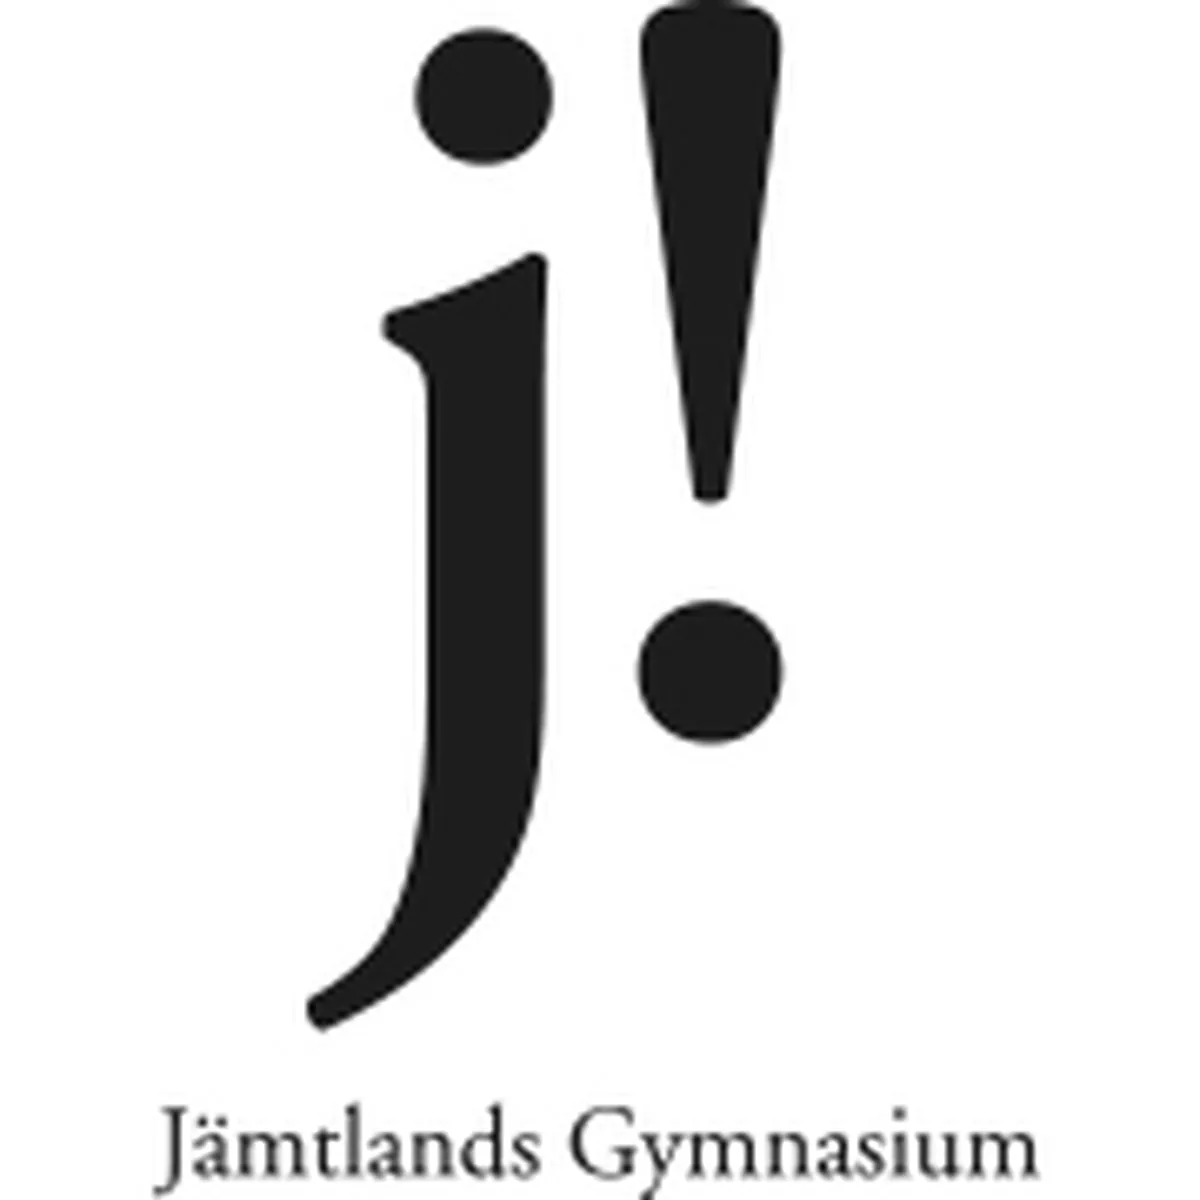 Jämtlands Gymnasium Bräcke